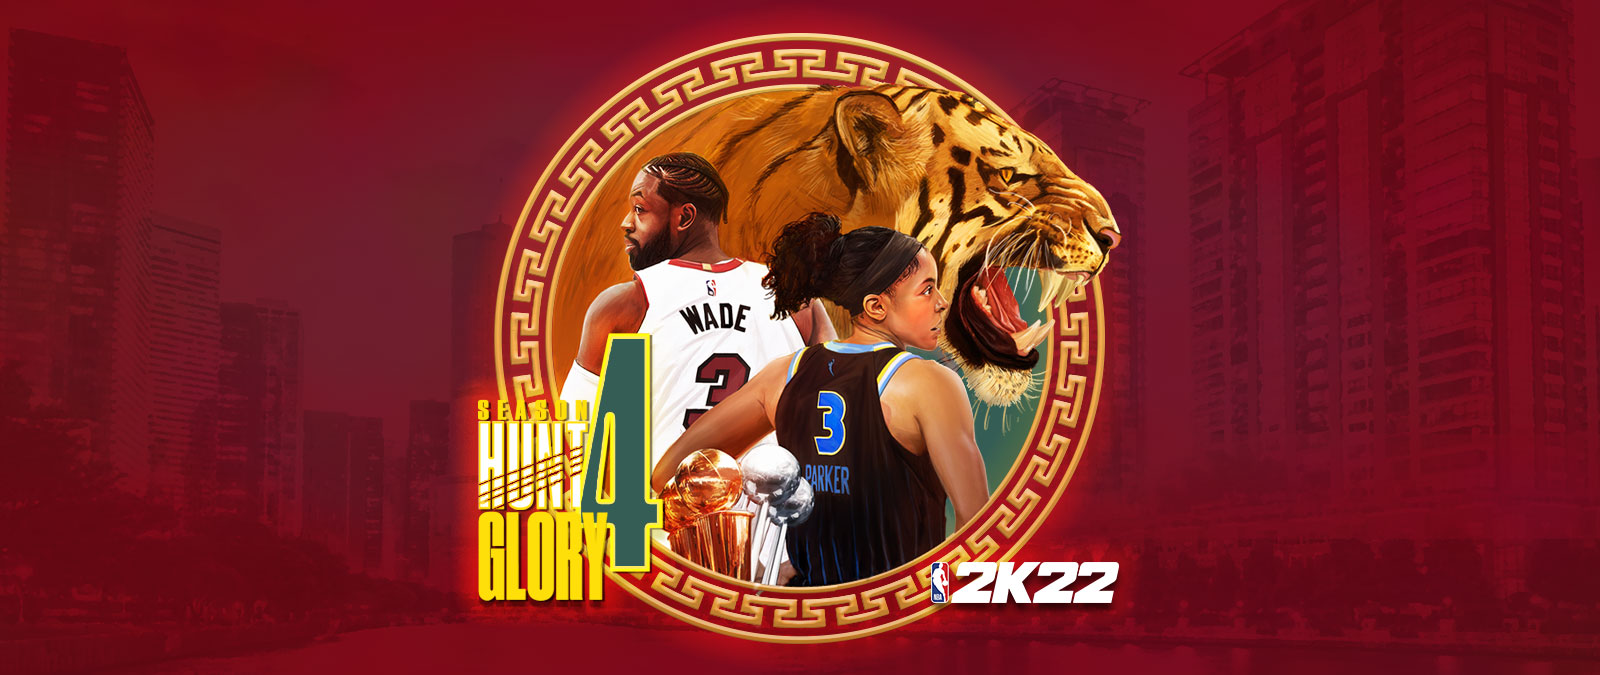 NBA 2K22, Temporada 4: Hunt 4 Glory, un elemento gráfico circular colocado sobre un paisaje urbano de tonos rojos que representa a un tigre gruñendo, así como a Dwayne Wade y Candace Parker de espaldas. 